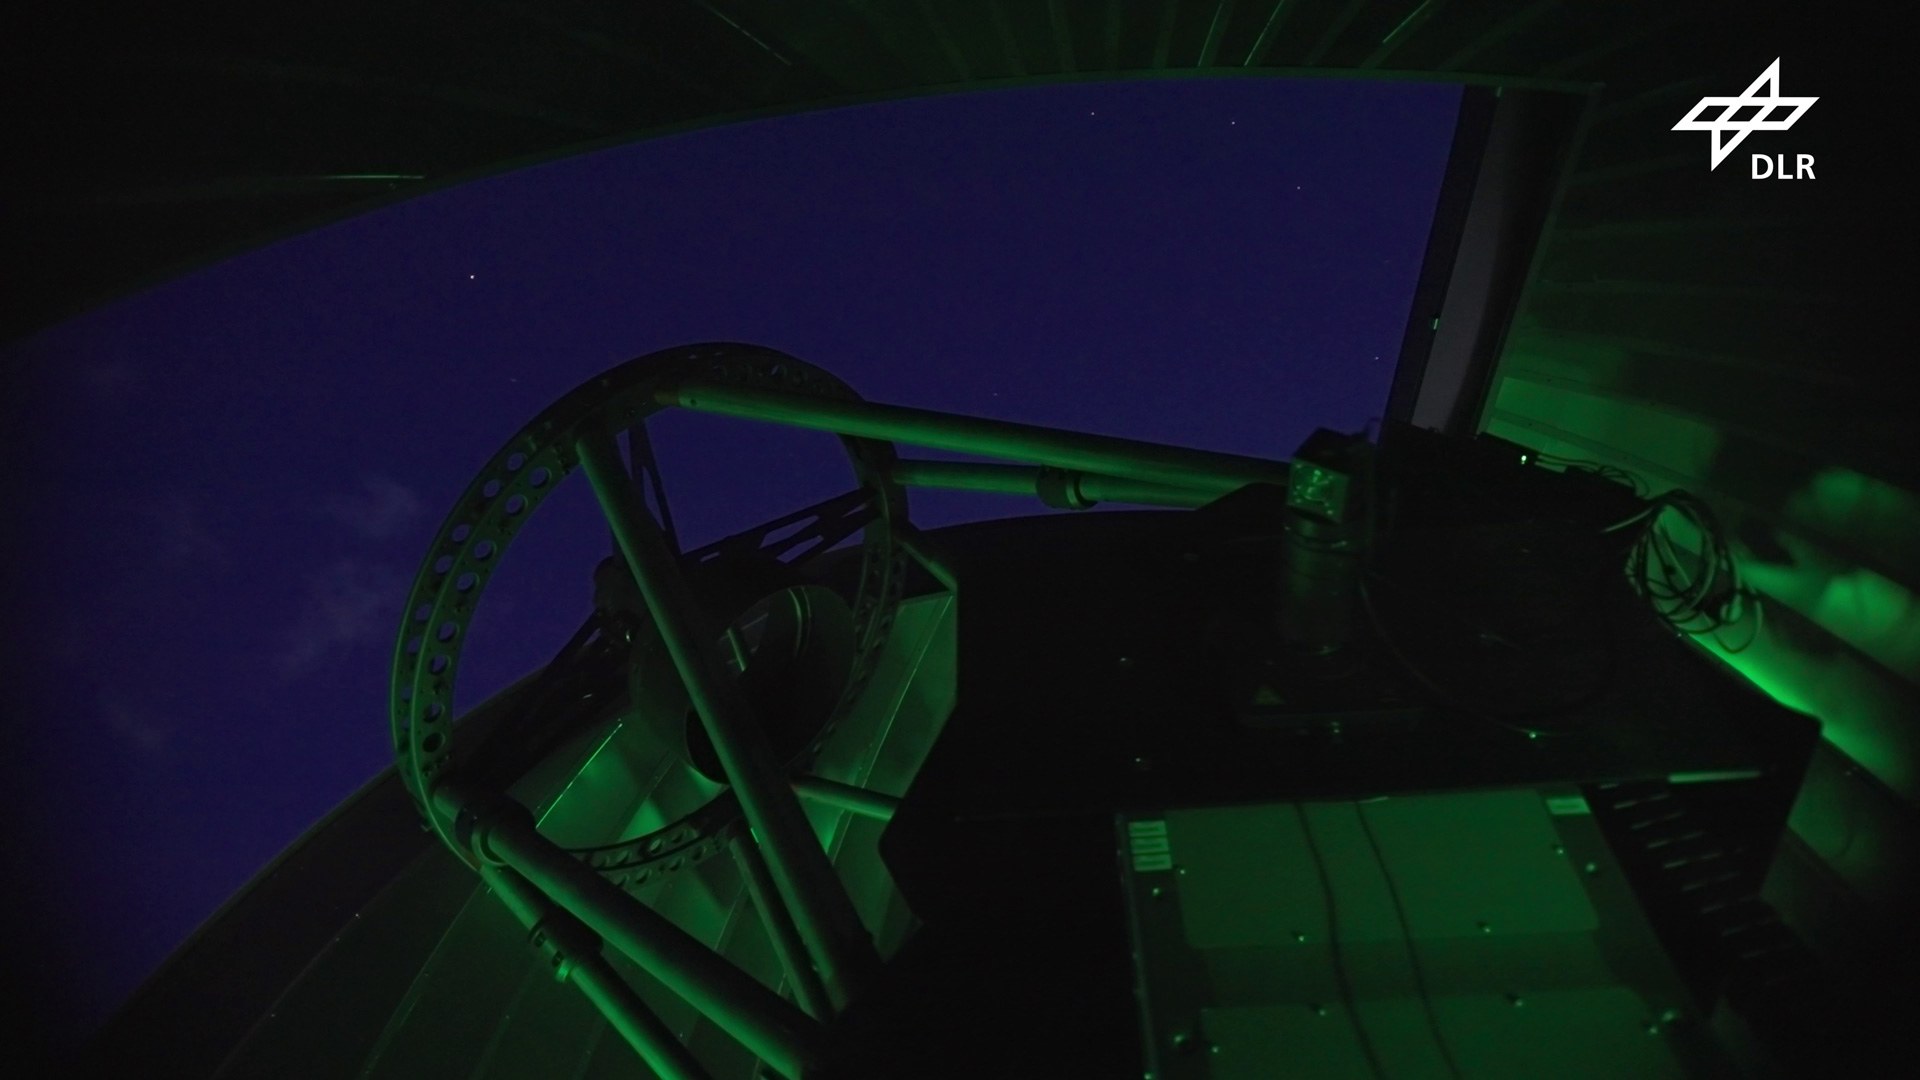 Standbild – Video: Johannes Kepler Observatorium des DLR: Mit Lasertechnologie dem Weltraumschrott auf der Spur